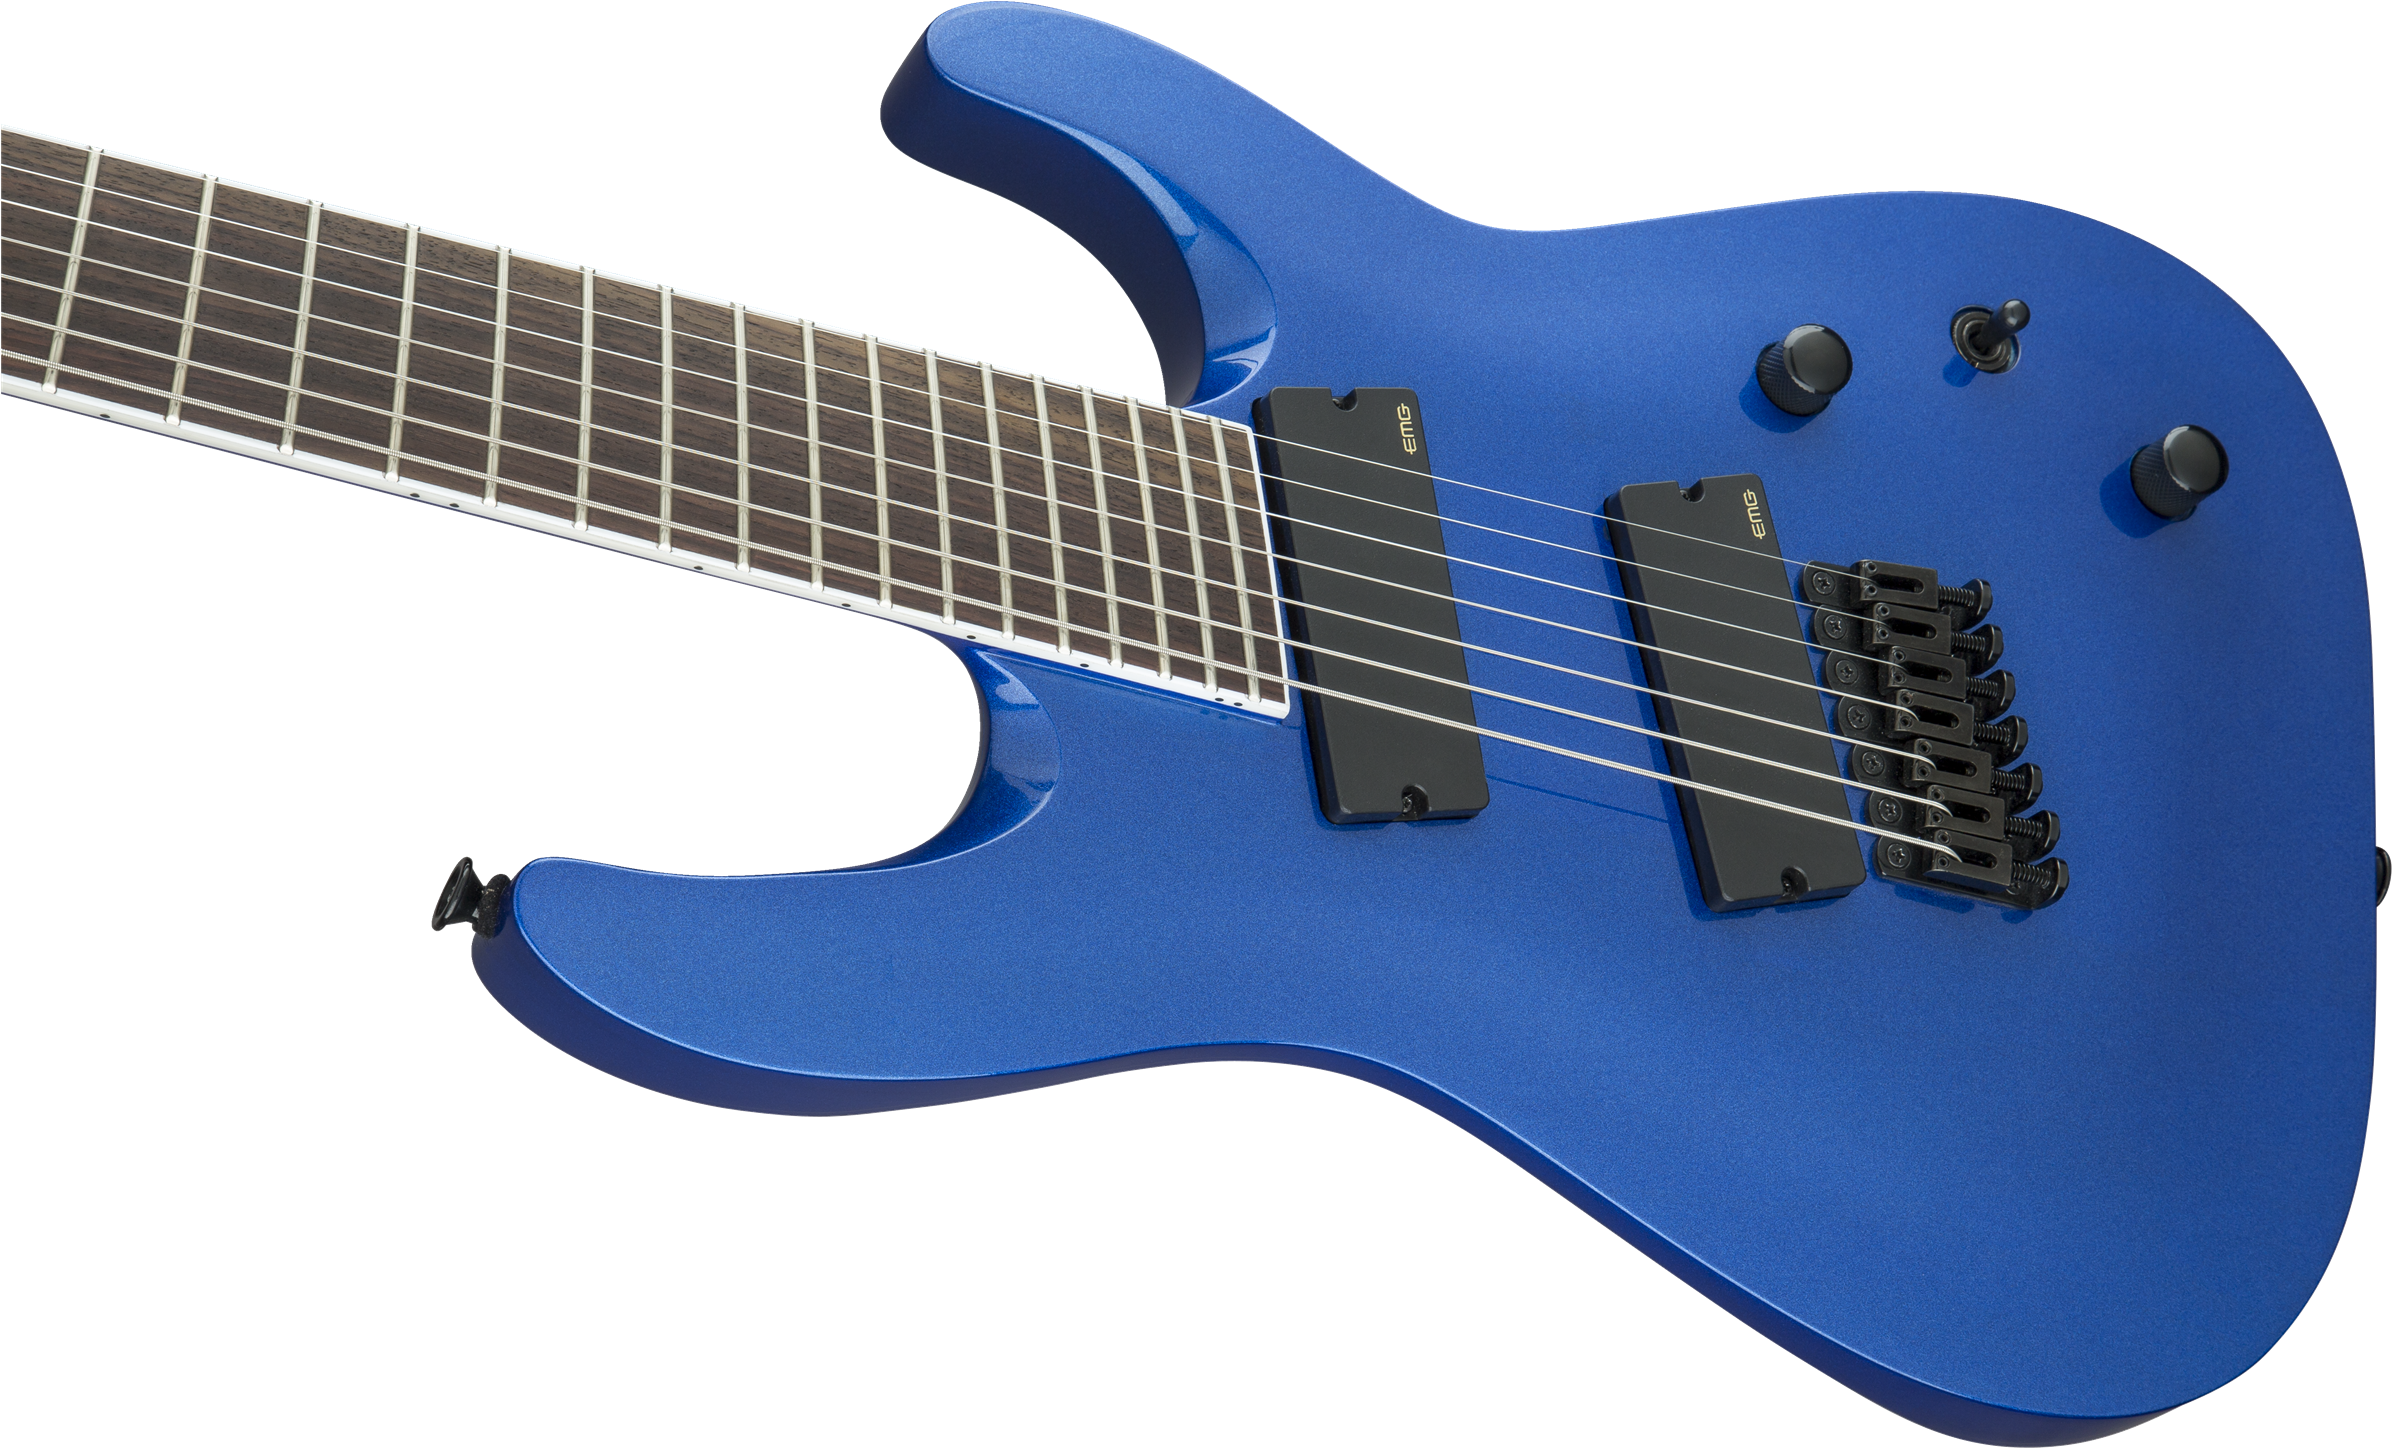 Jackson X Series Soloist Arch Top SLAT7 MS Laurel Fingerboard Multi-Scale Metallic Blue